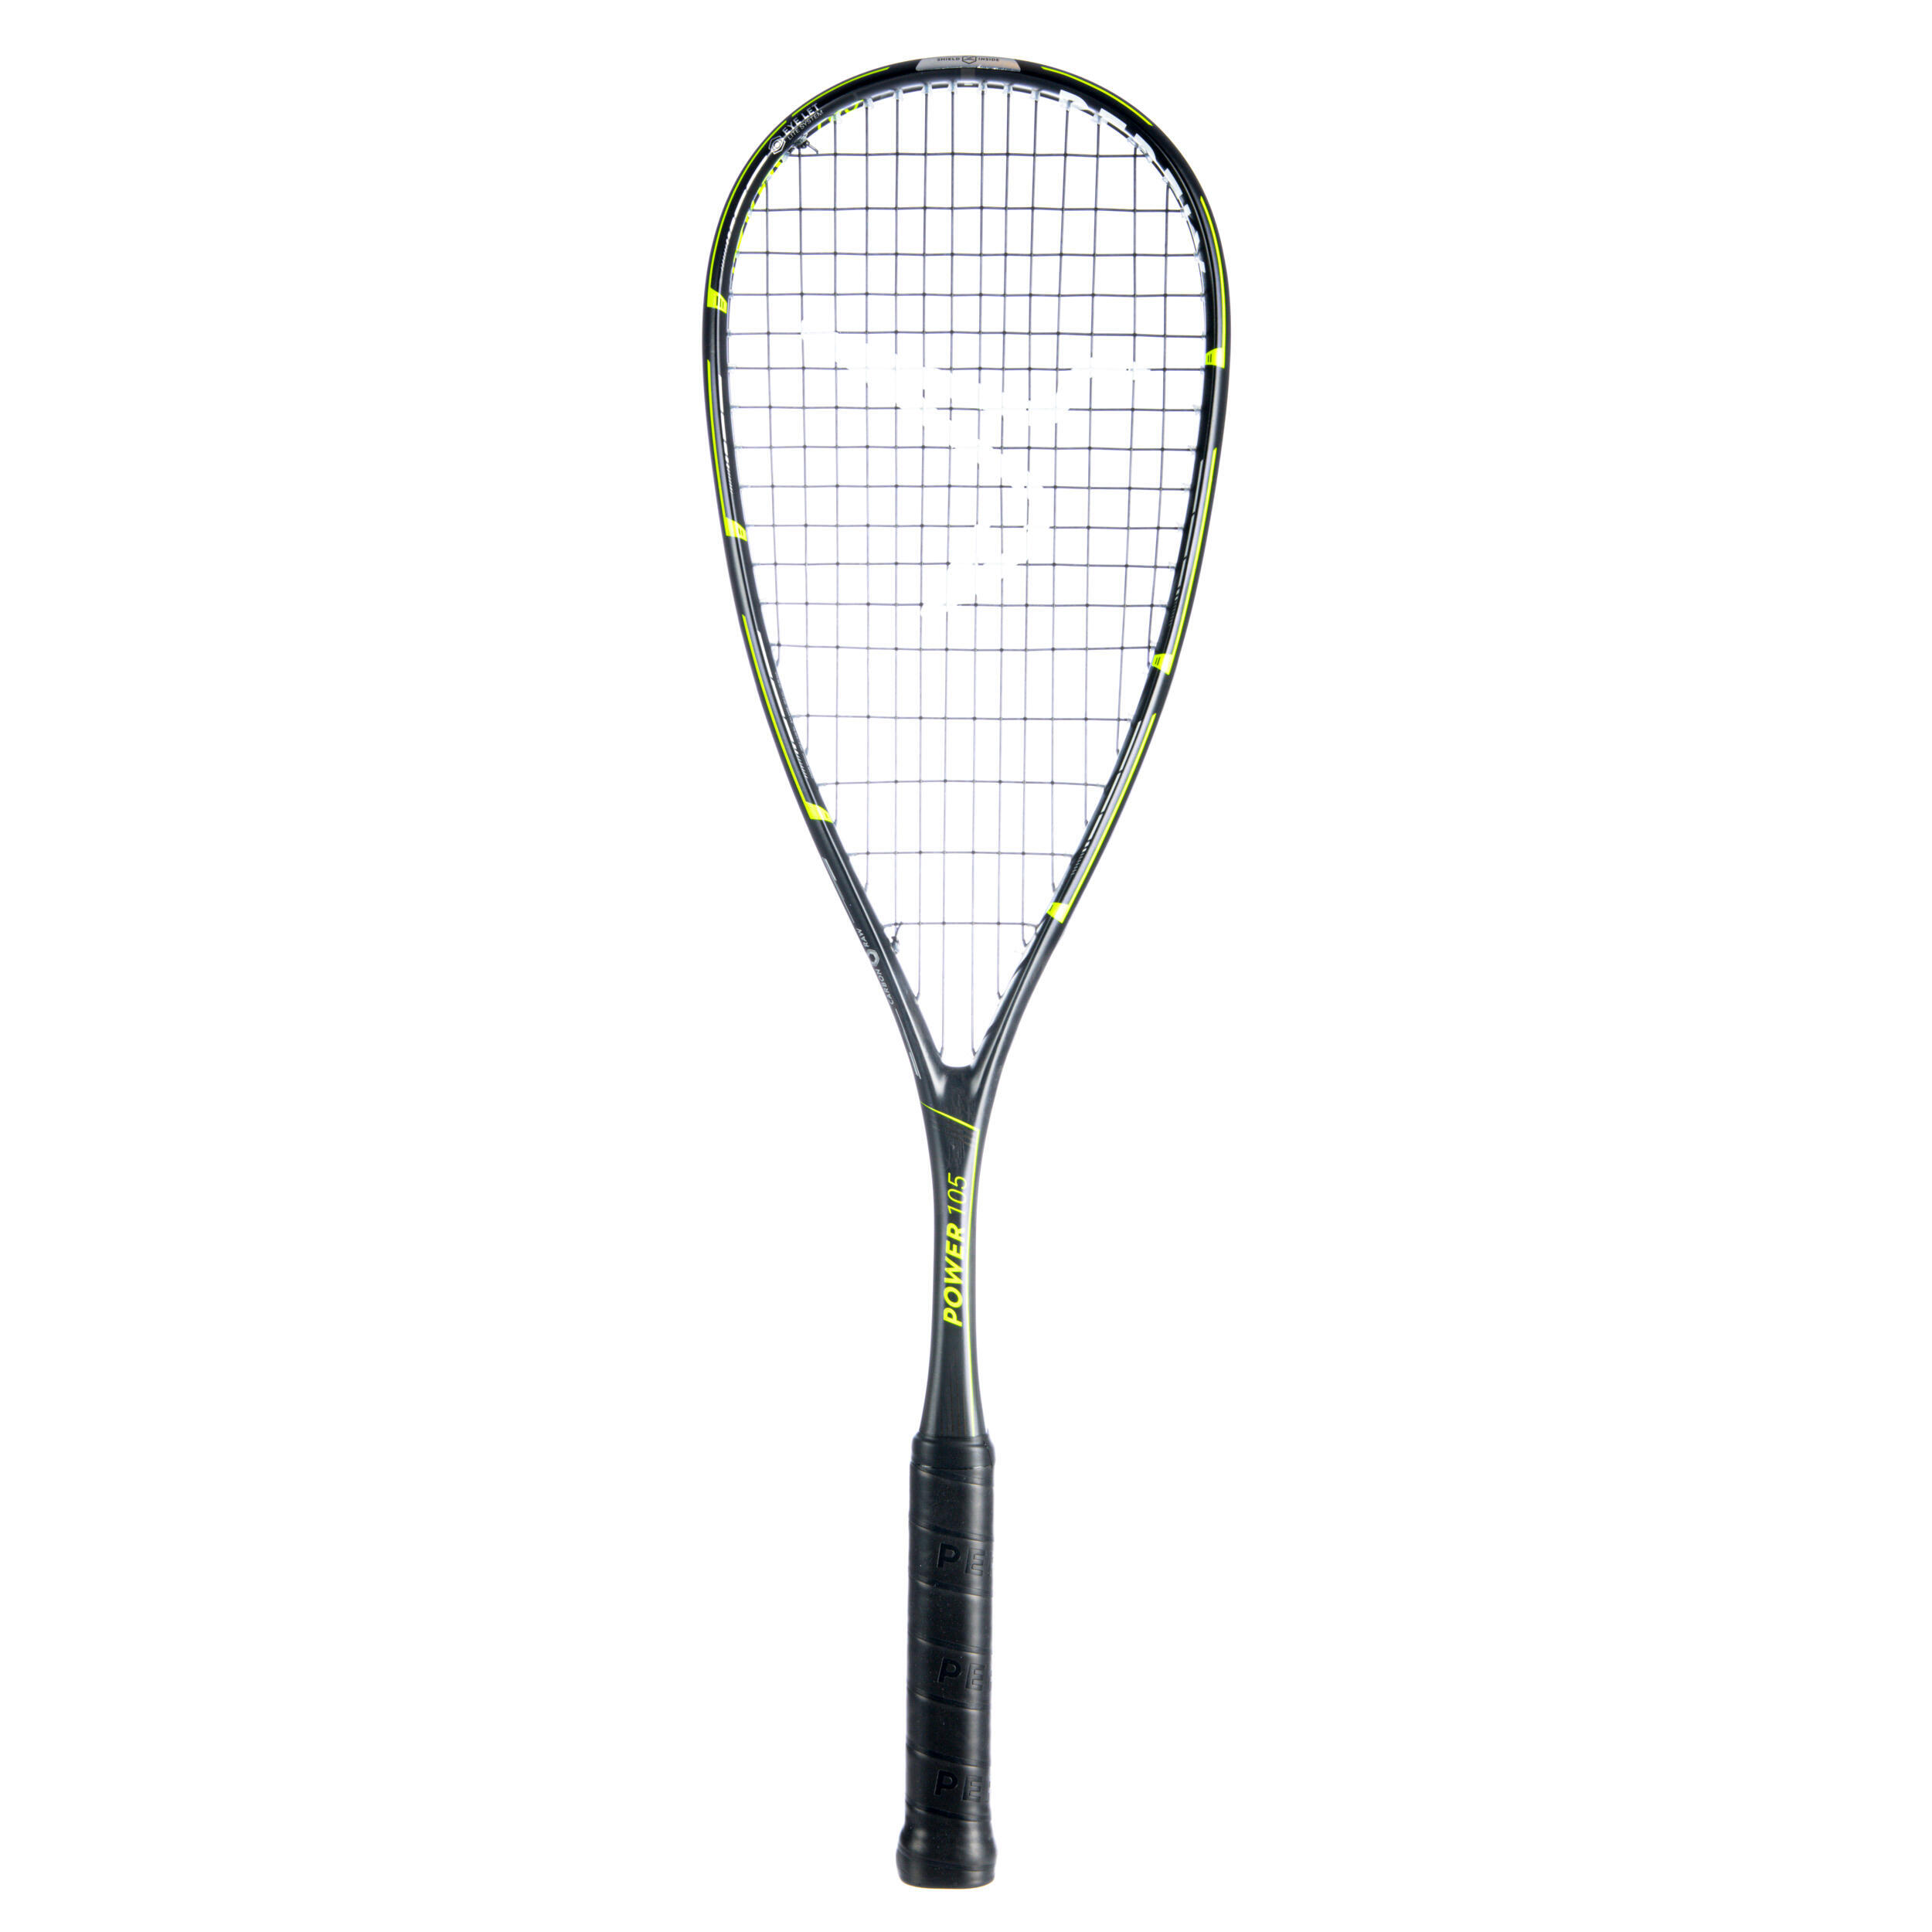 PERFLY Squash Racket Power 105